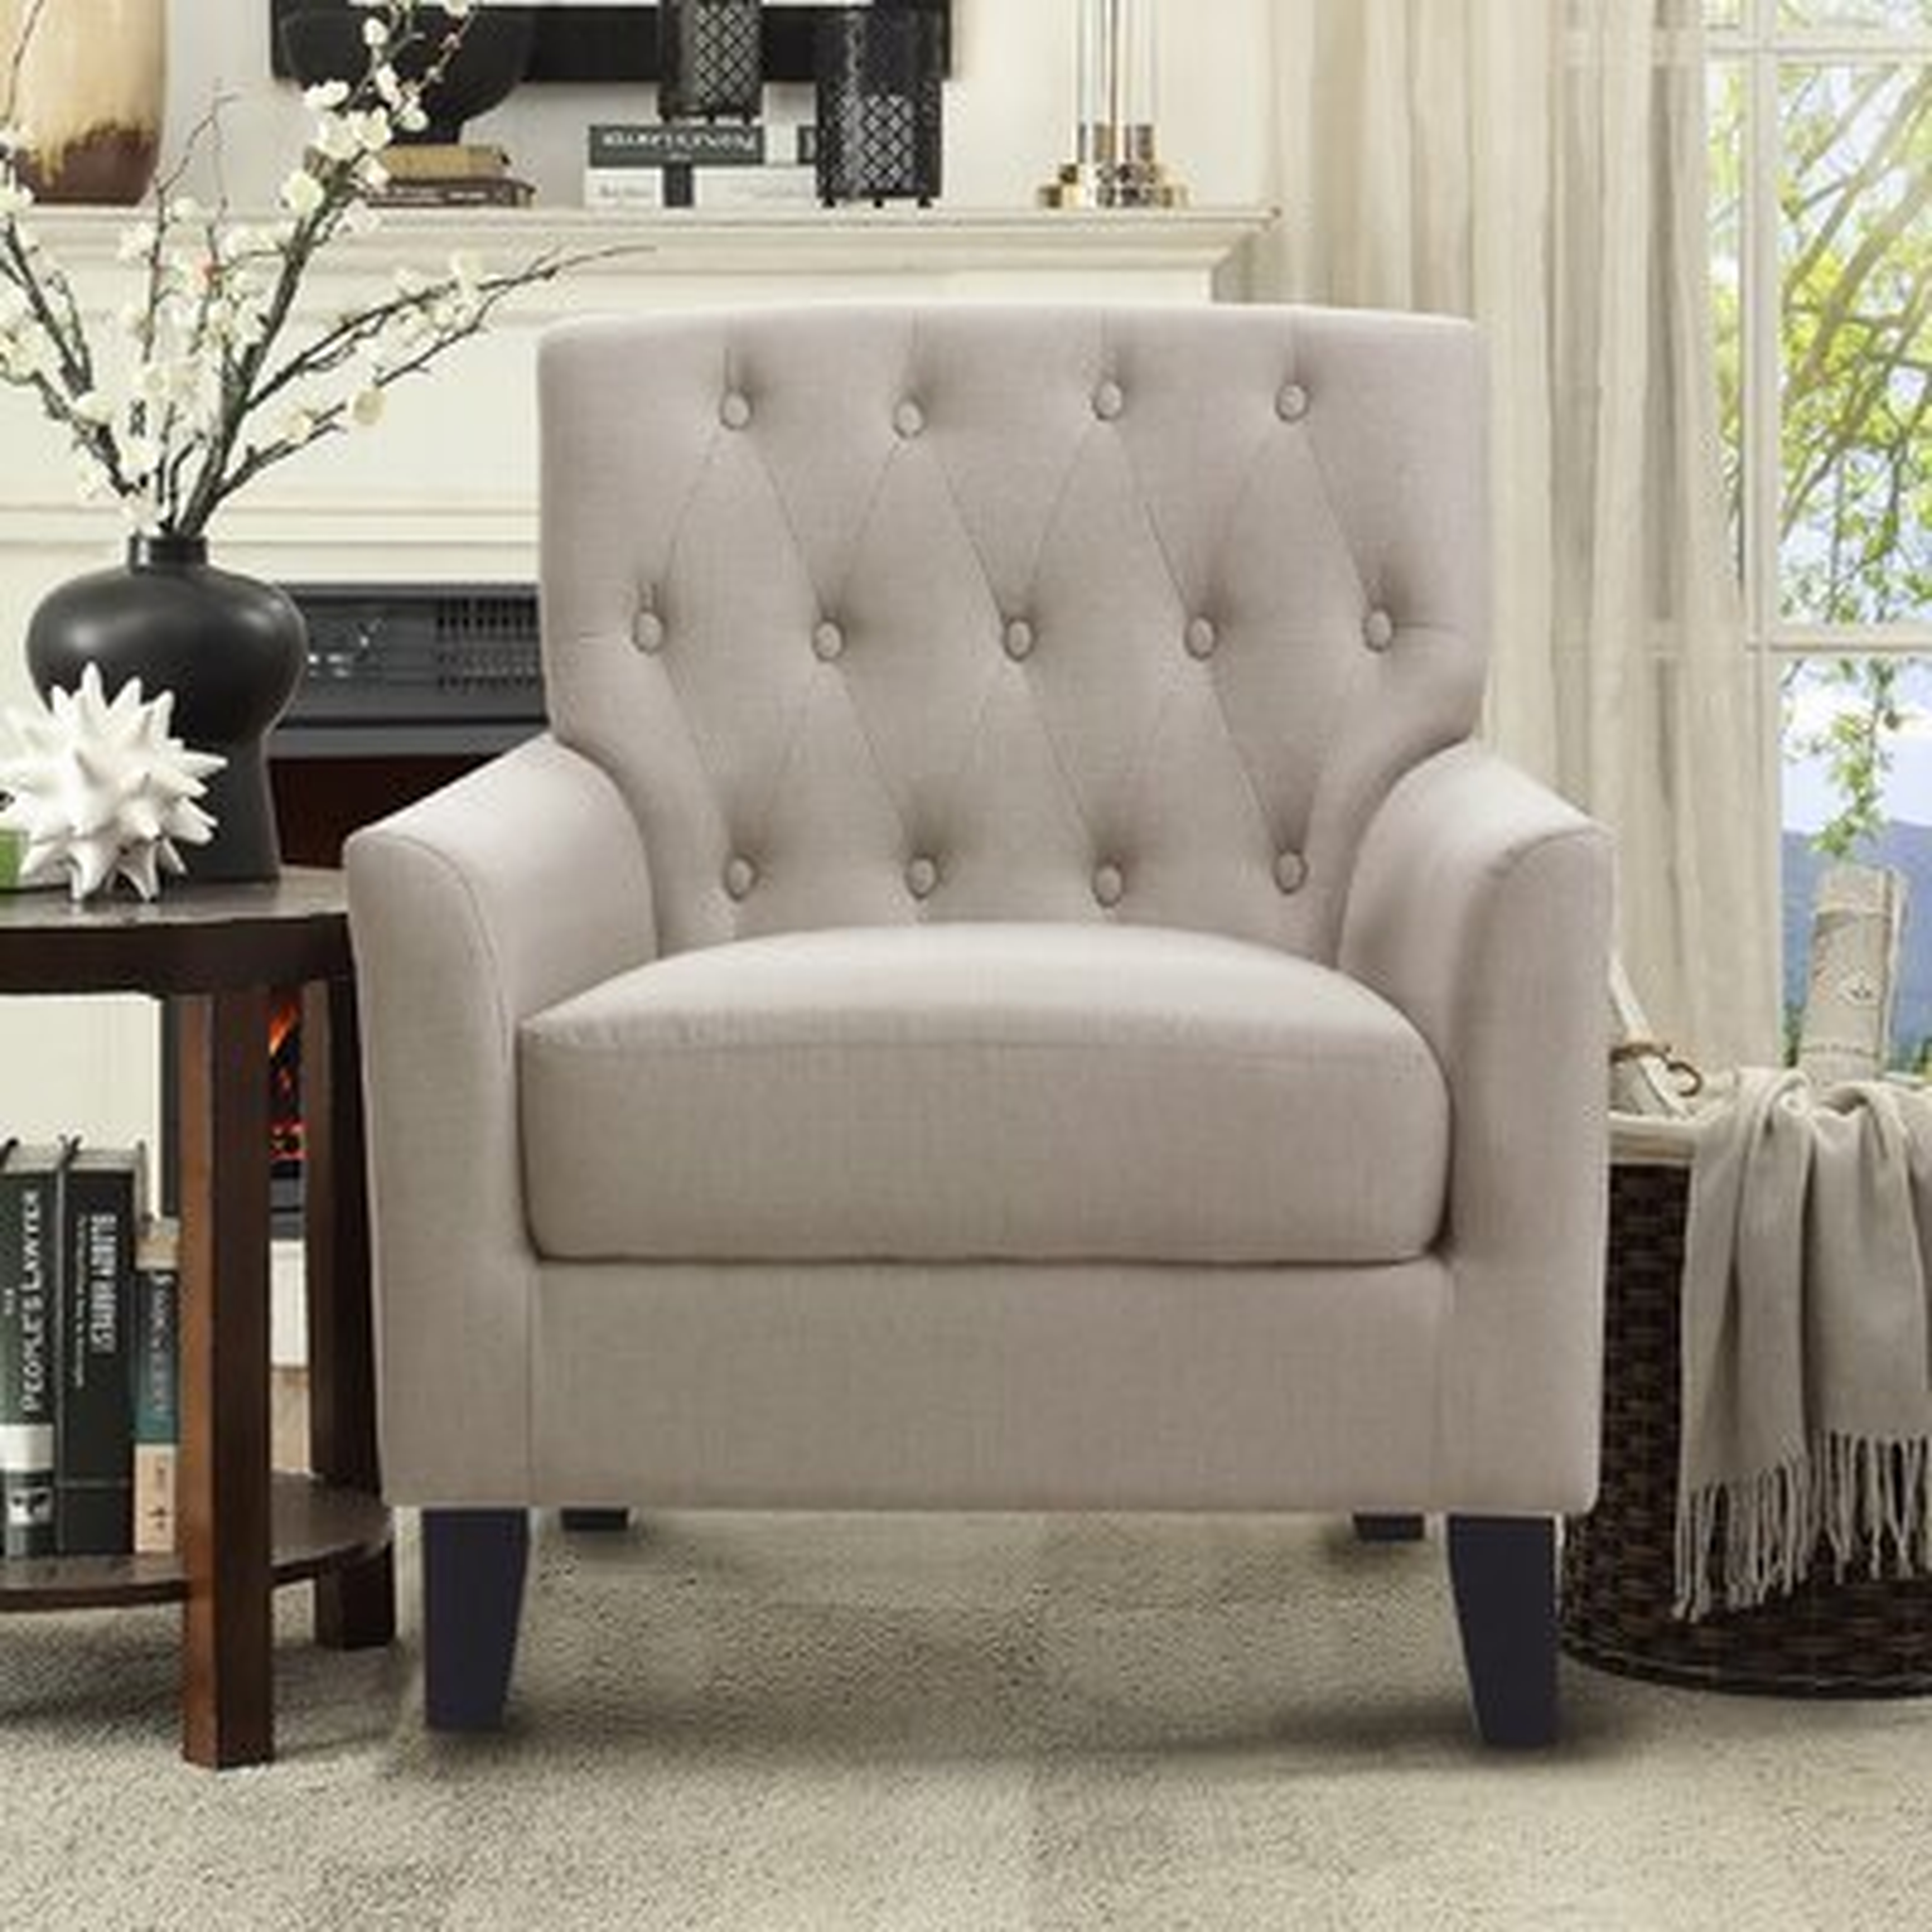 Popel 29.5" Wide Tufted Linen Armchair, Cream Linen - Wayfair